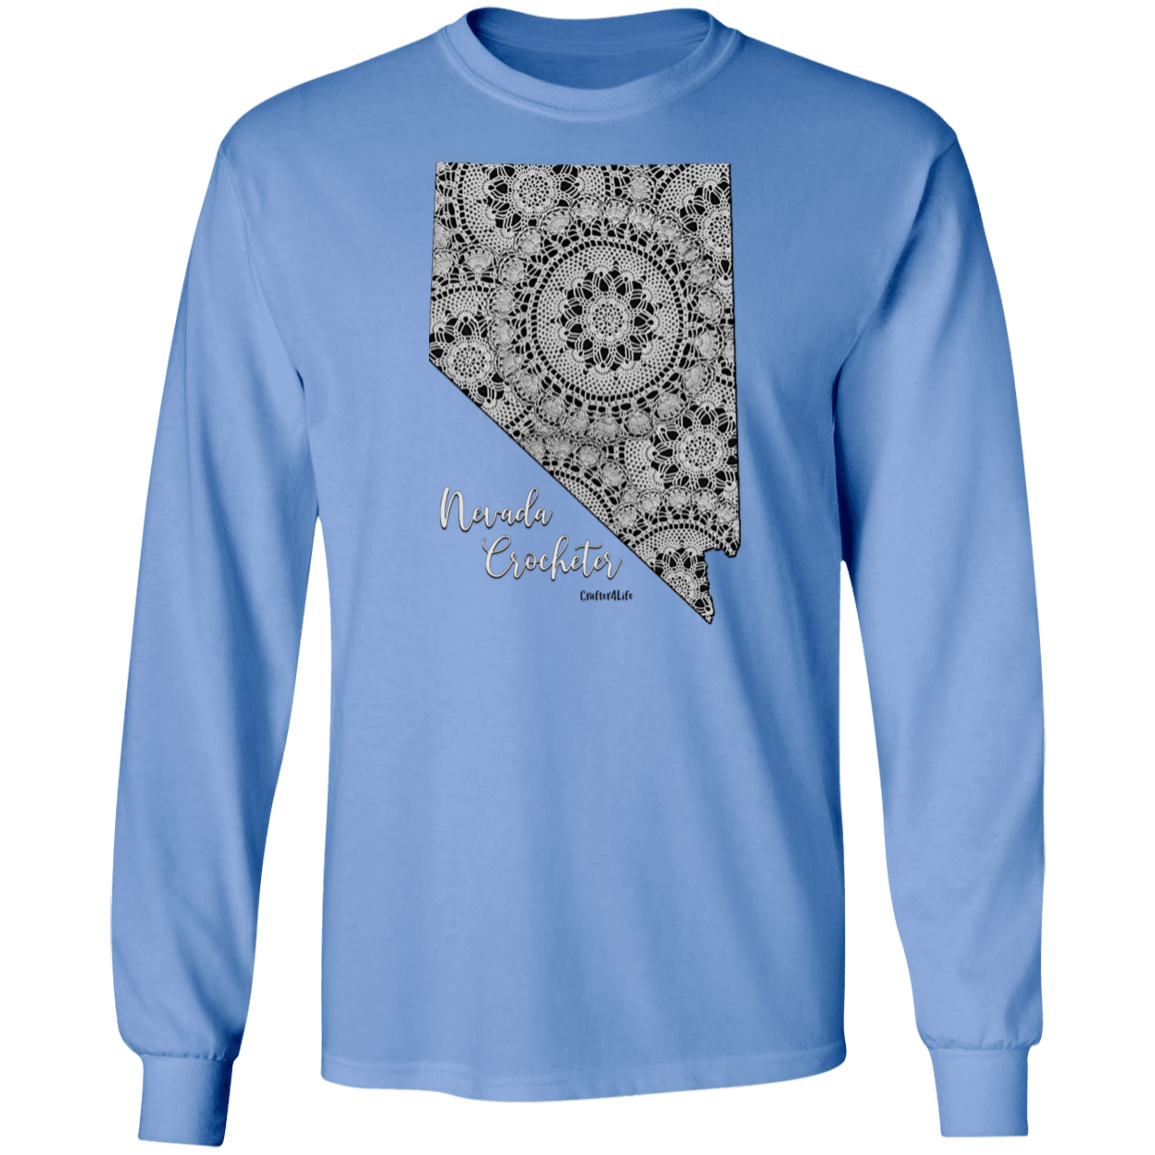 Nevada Crocheter LS Ultra Cotton T-Shirt